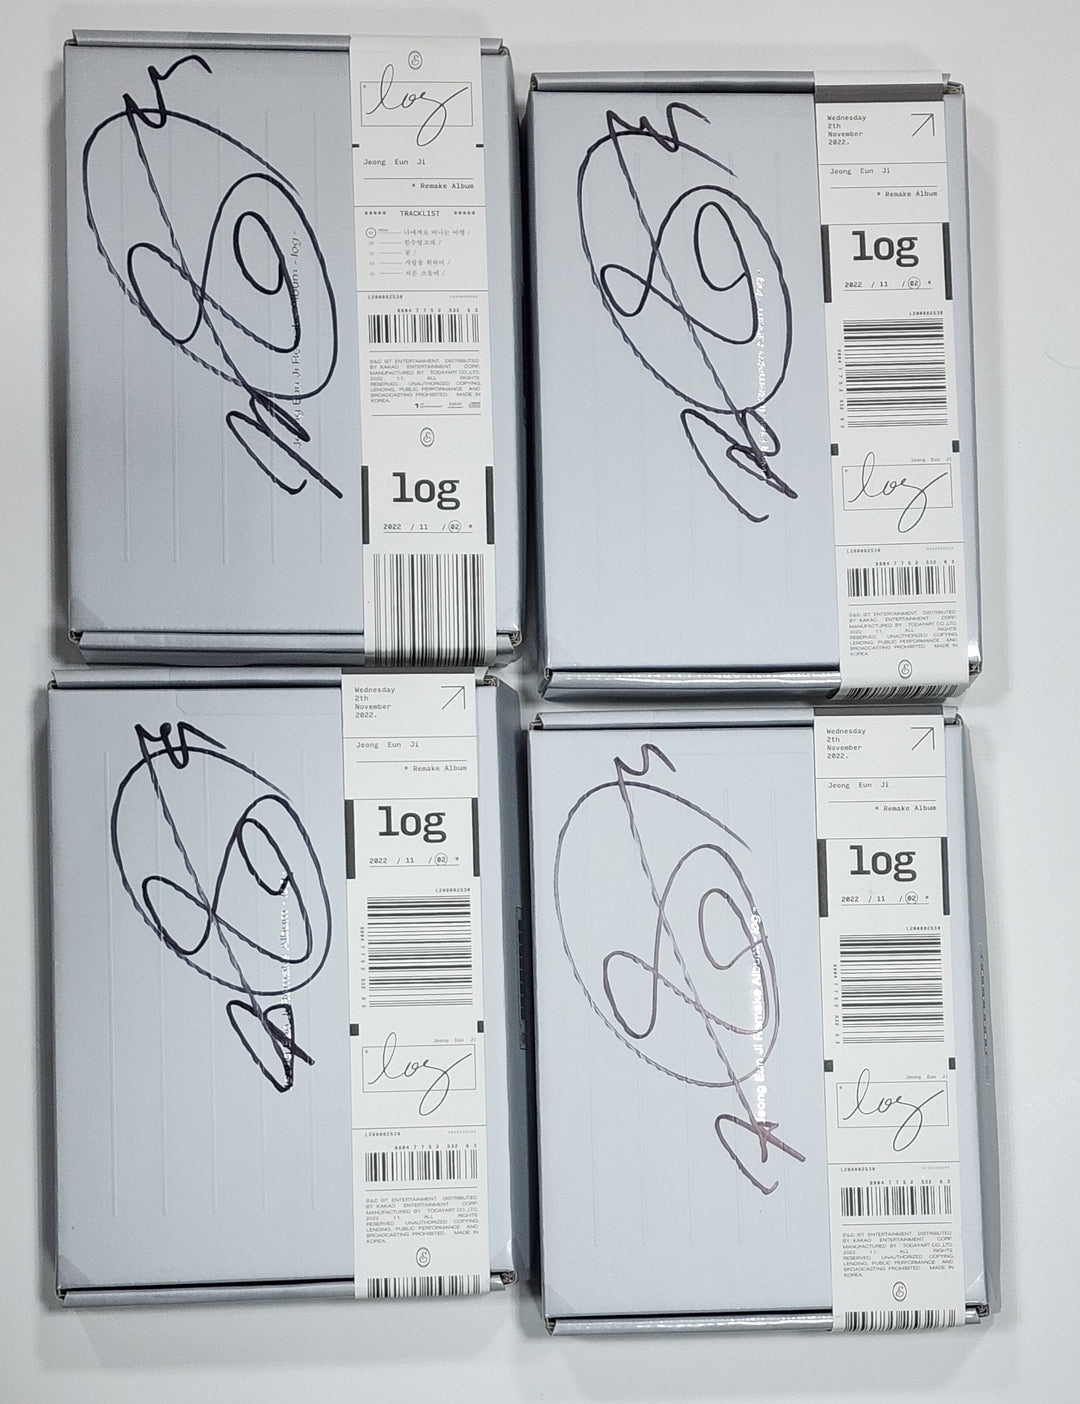 JEONG EUN JI "log" - Hand Autographed(Signed) Promo Album